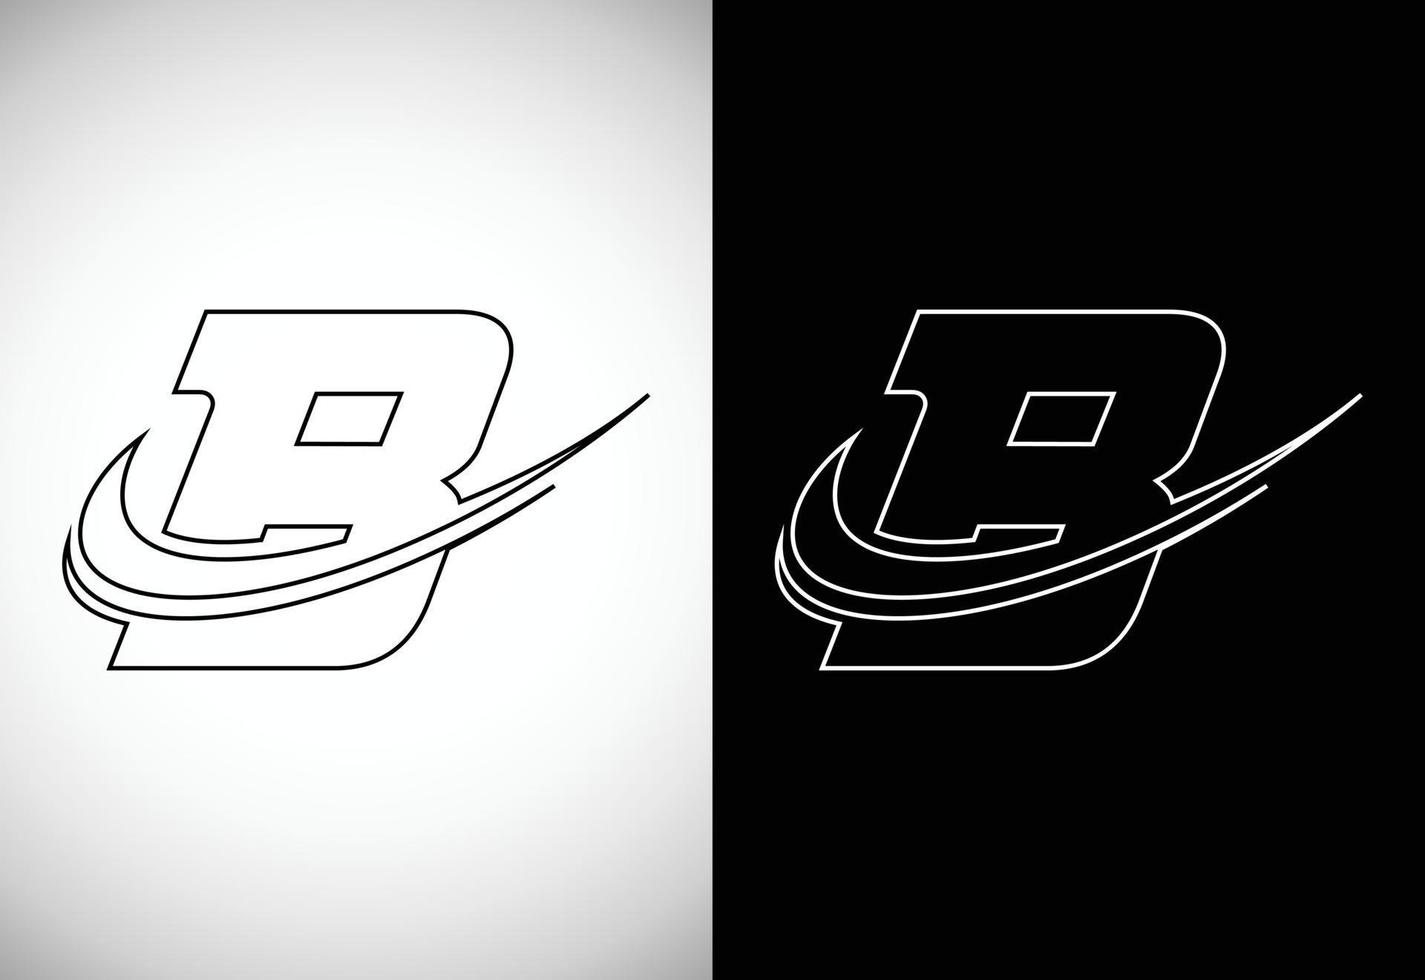 iniziale lettera B con un' swoosh linea stile artistico logo. moderno vettore logotipo per attività commerciale e azienda identità.